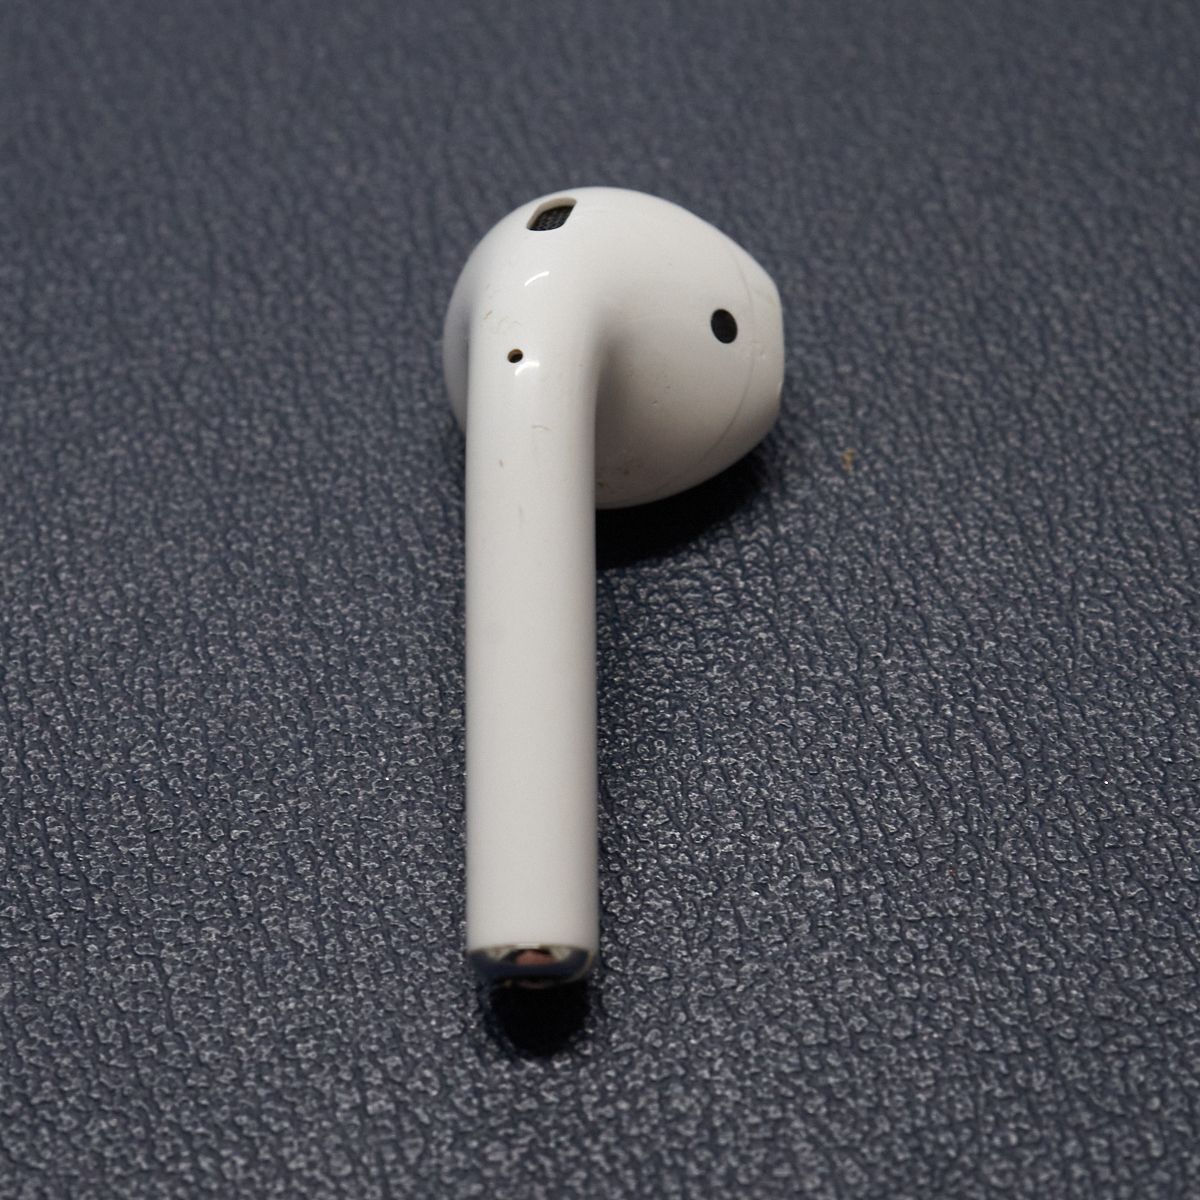 Apple AirPods エアーポッズ USED品 右イヤホンのみ R 片耳 A1523 第1